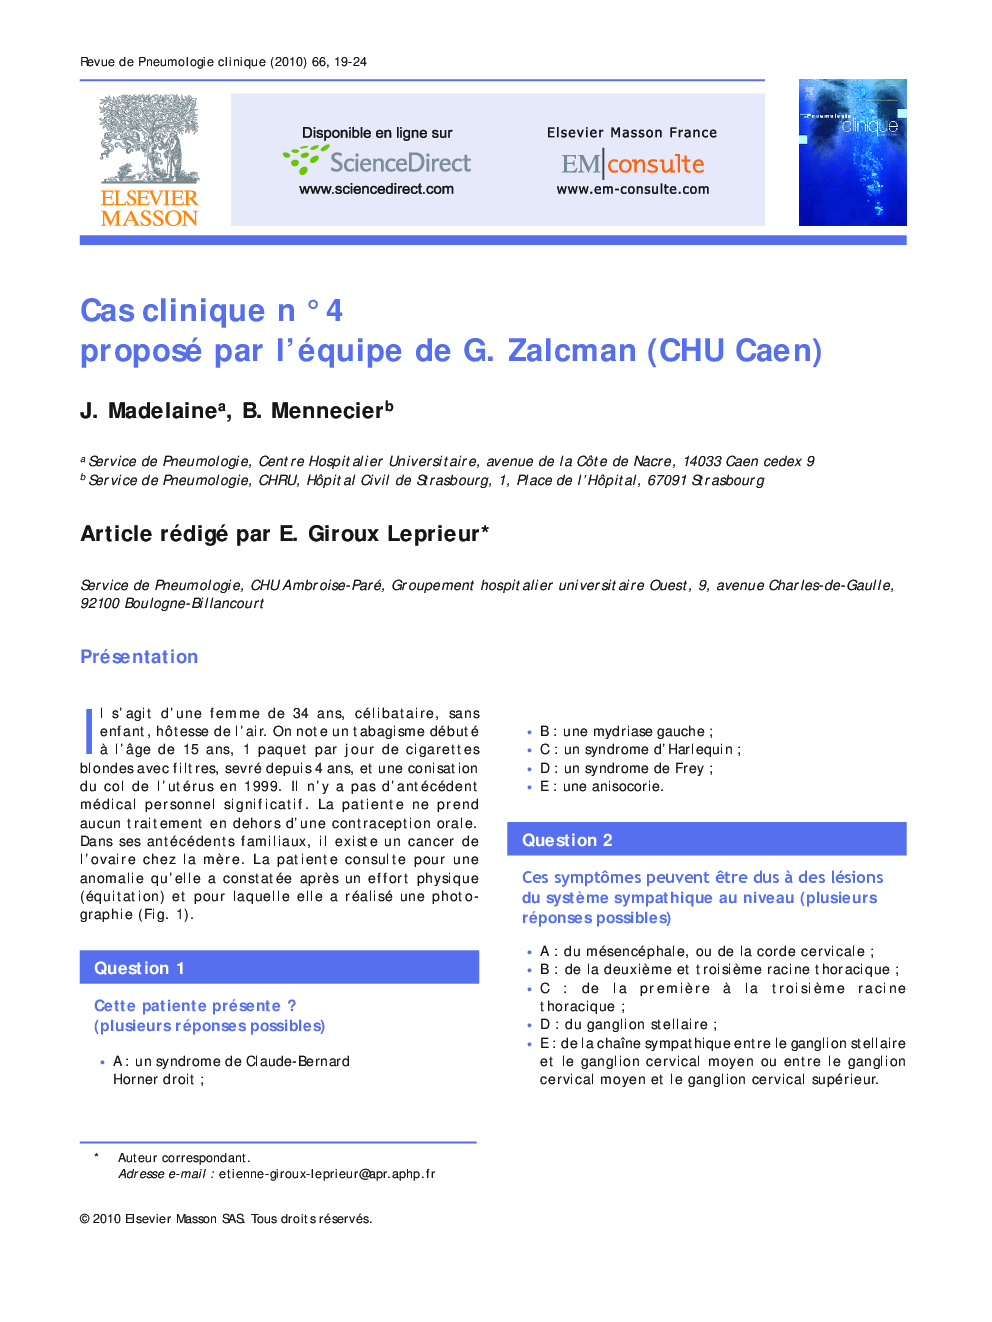 Cas clinique nÂ°4 proposé par l'équipe de G. Zalcman (CHU Caen)